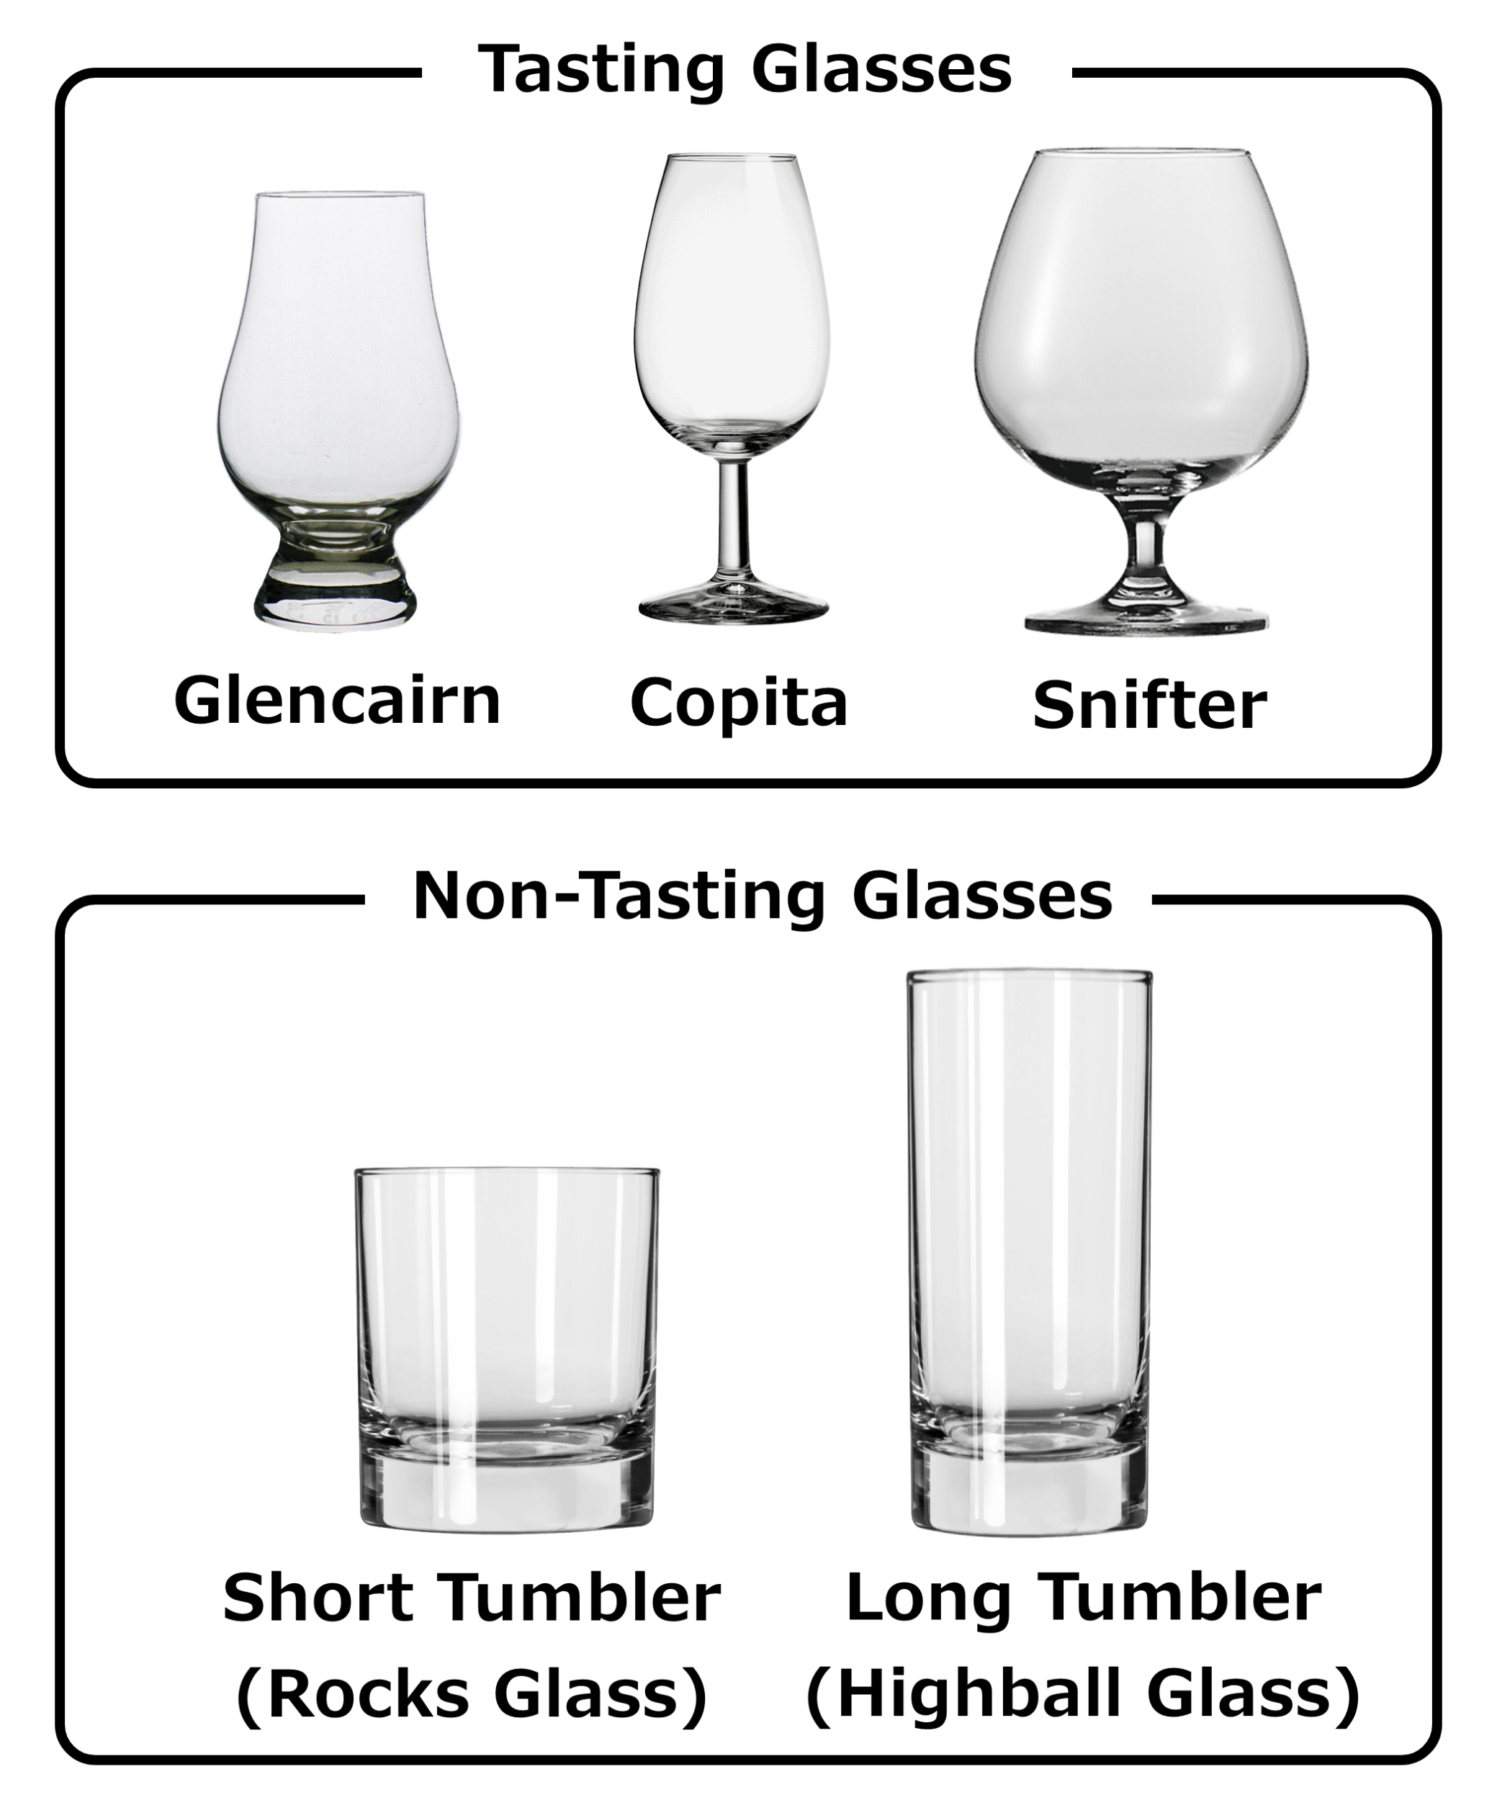 Whisky Tasting Glasses and Non-Tasting Glasses